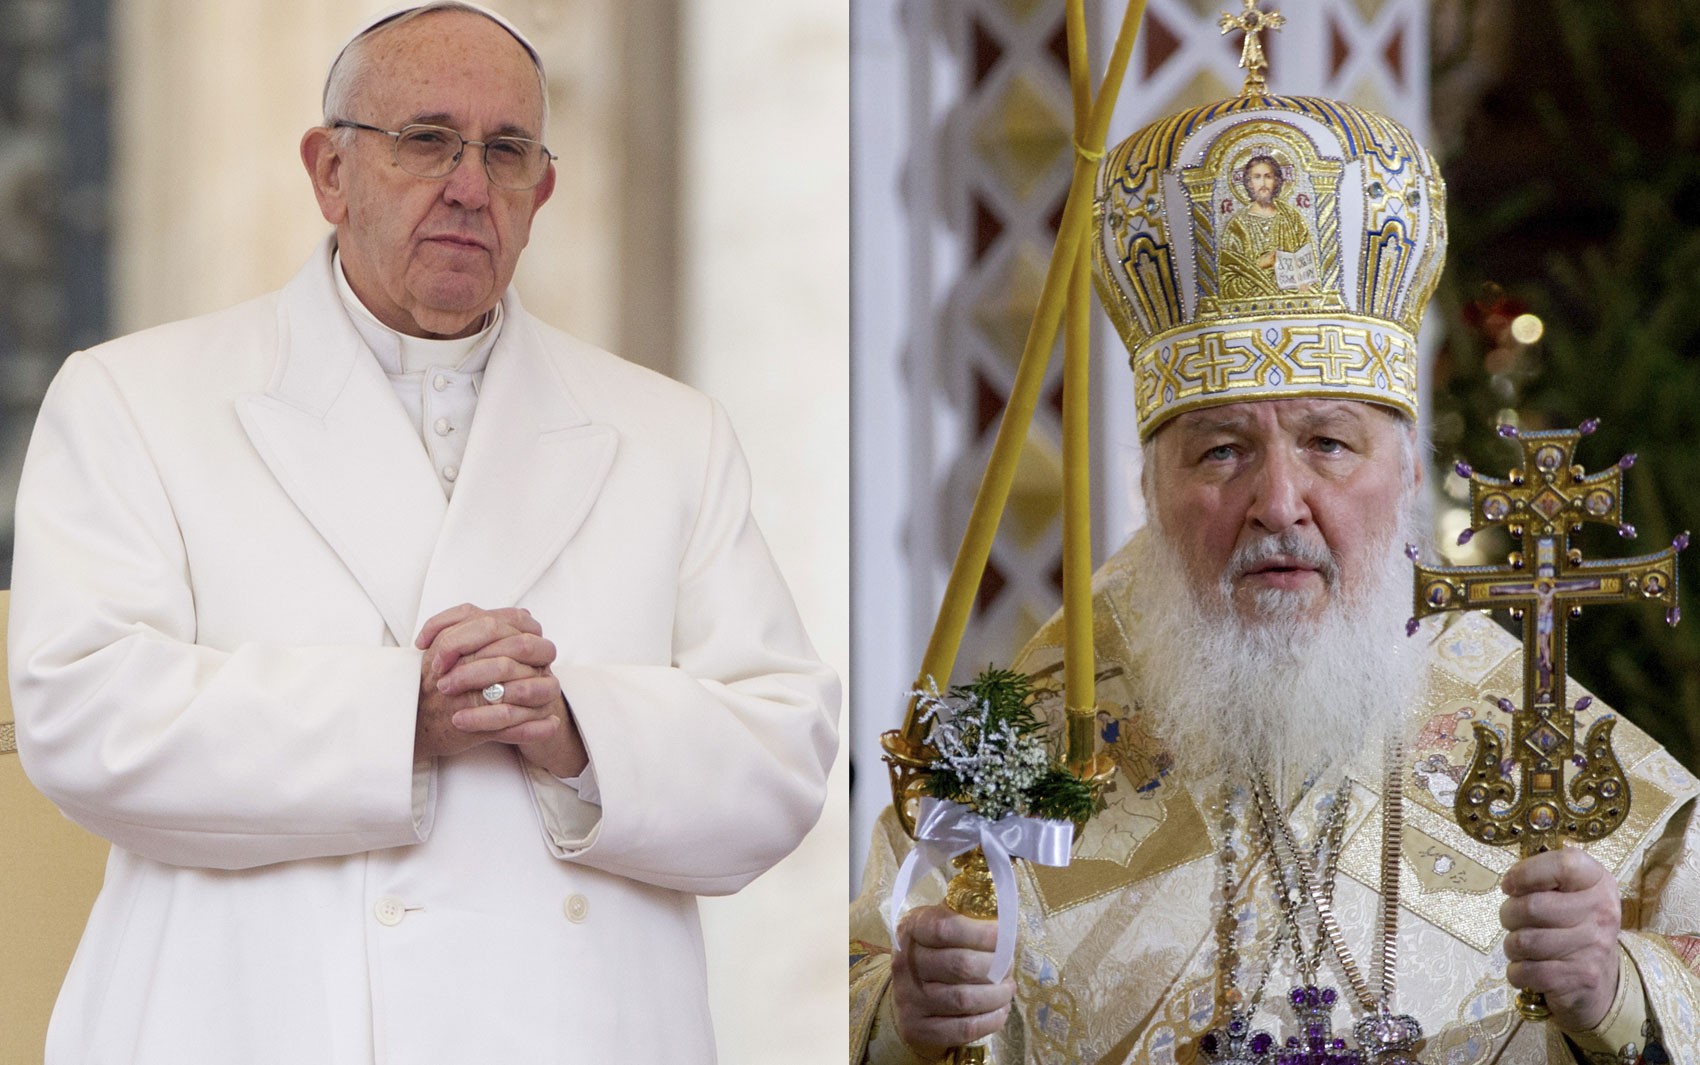 O Papa Francisco, em foto de 30 de janeiro, e o Patriarca da Igreja Ortodoxa Russa, Kirill, em foto de 7 de janeiro (Foto: AP Photo/Ivan Sekretarev/Andrew Medichini)